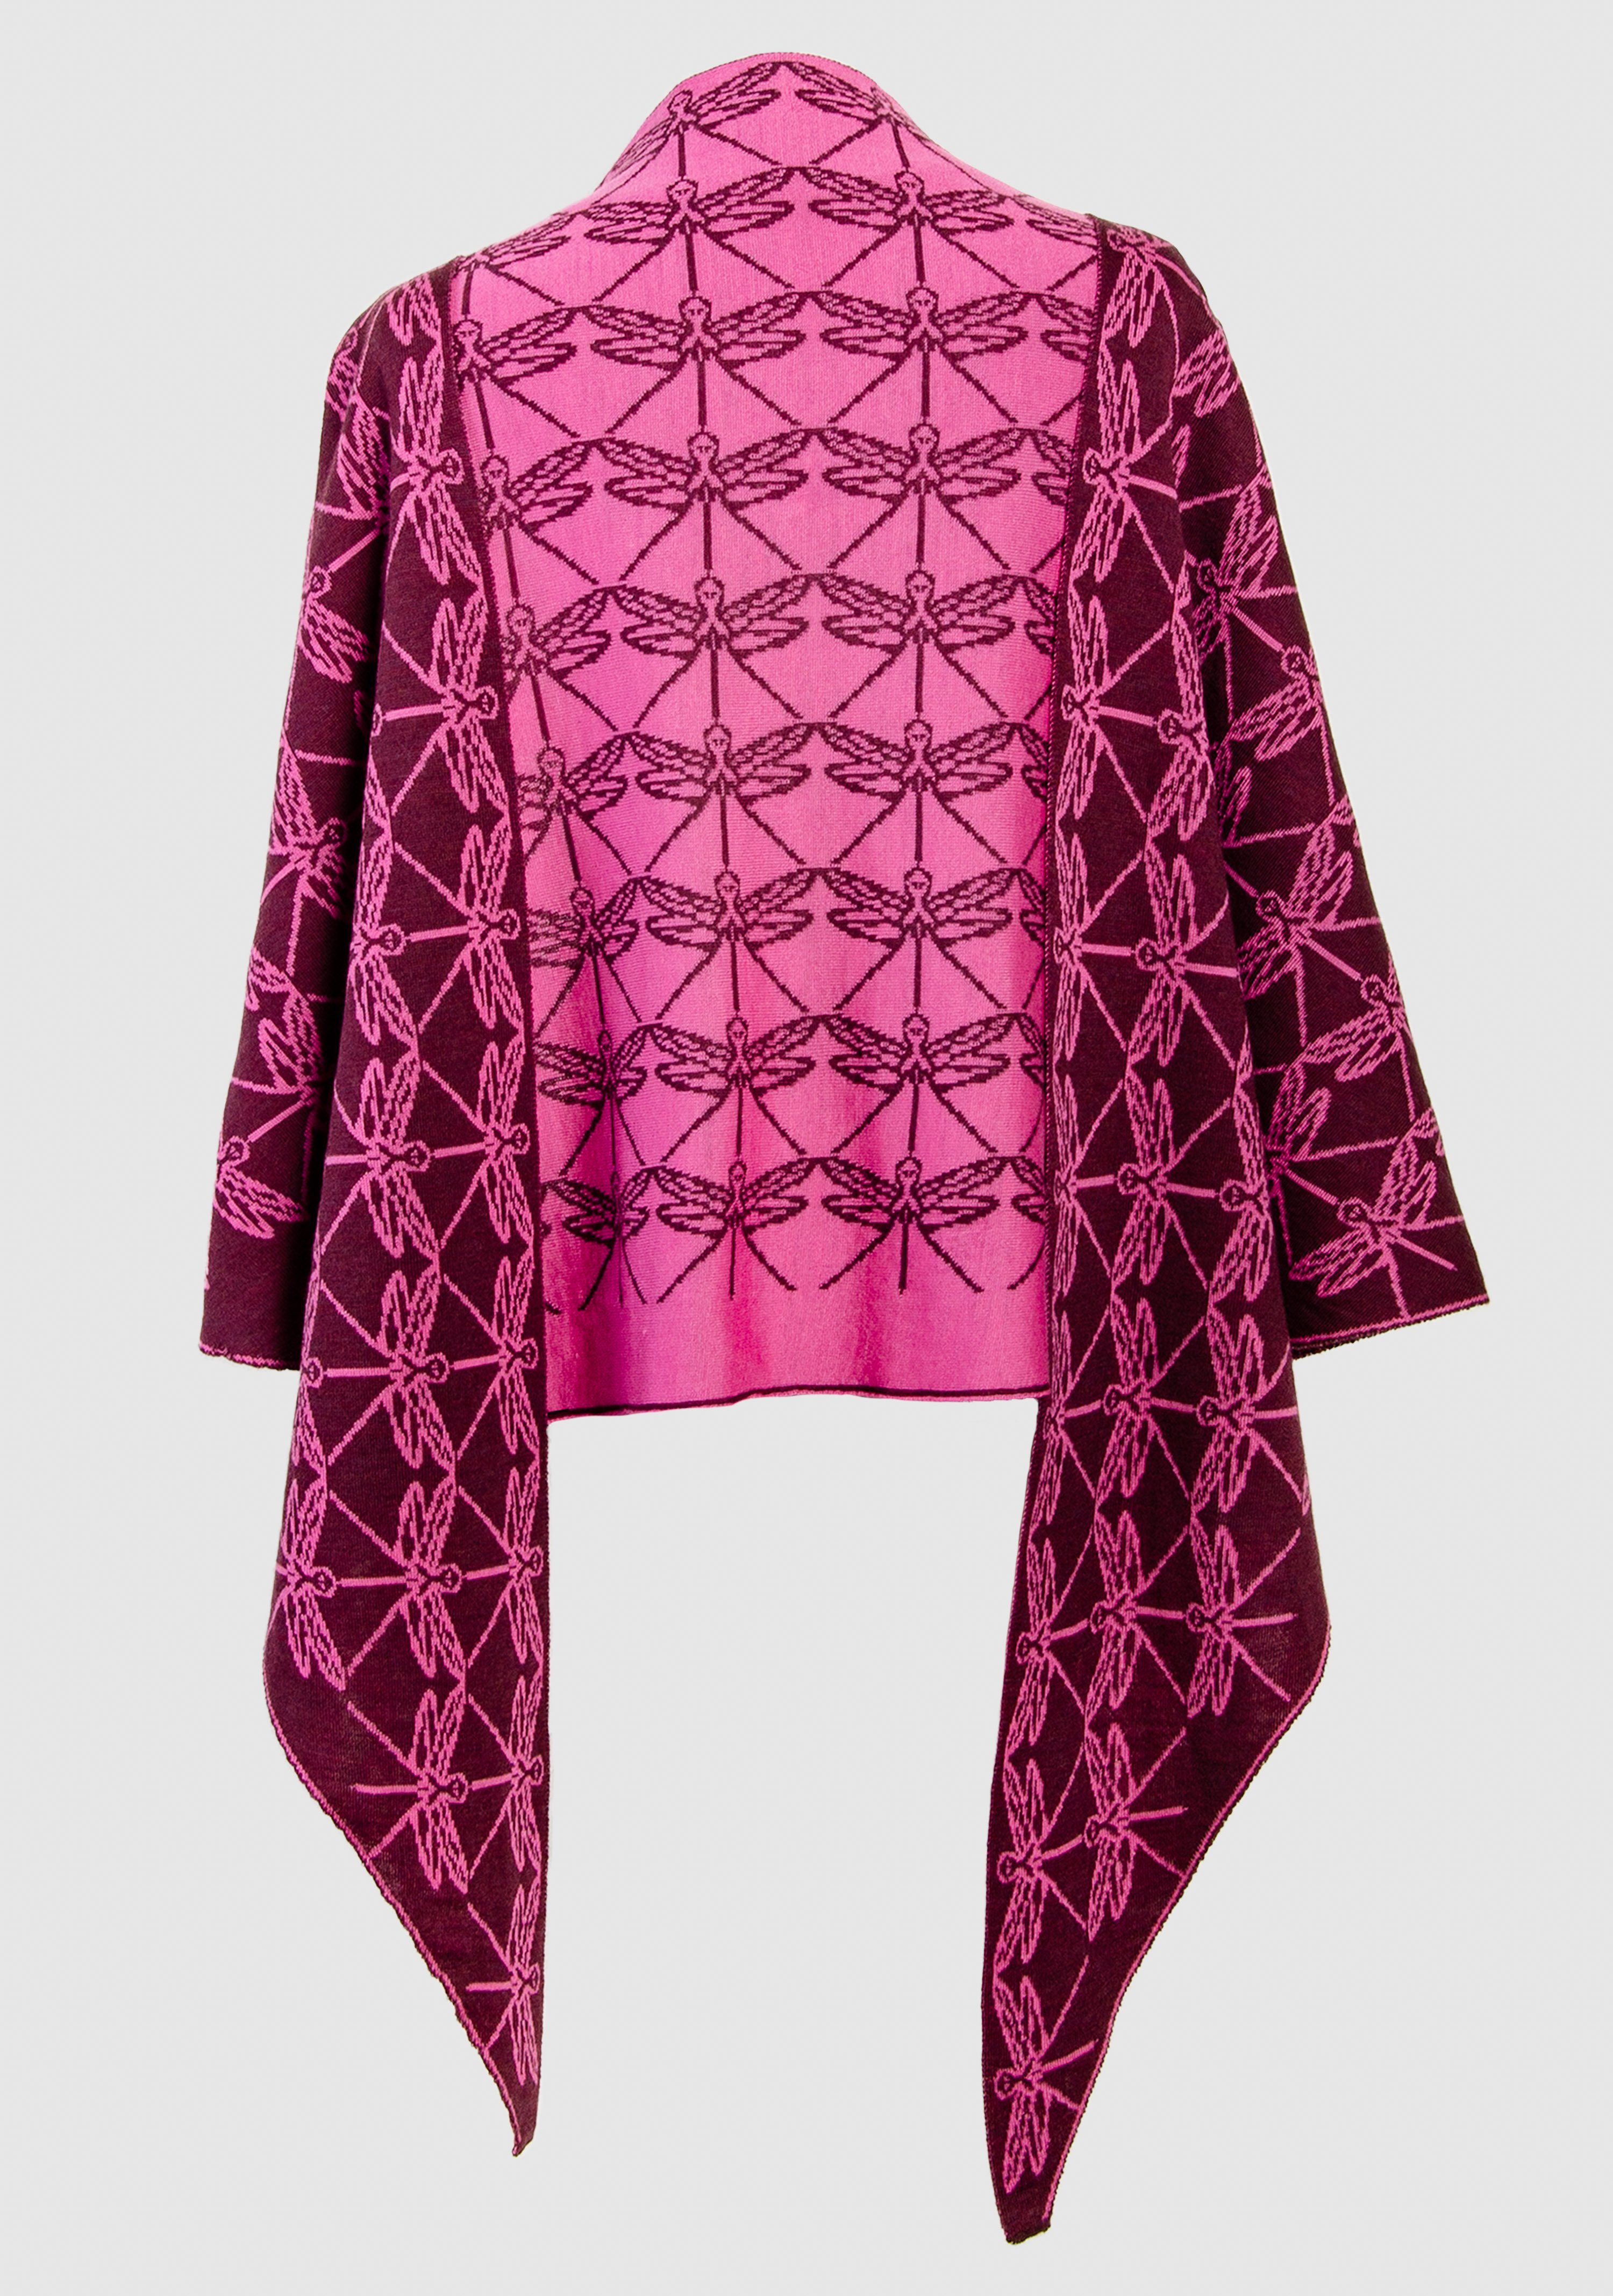 LANARTO slow fashion Modetuch Schultertuch 100% zweifarbig purpur_pink Merino Libelle extrasoft